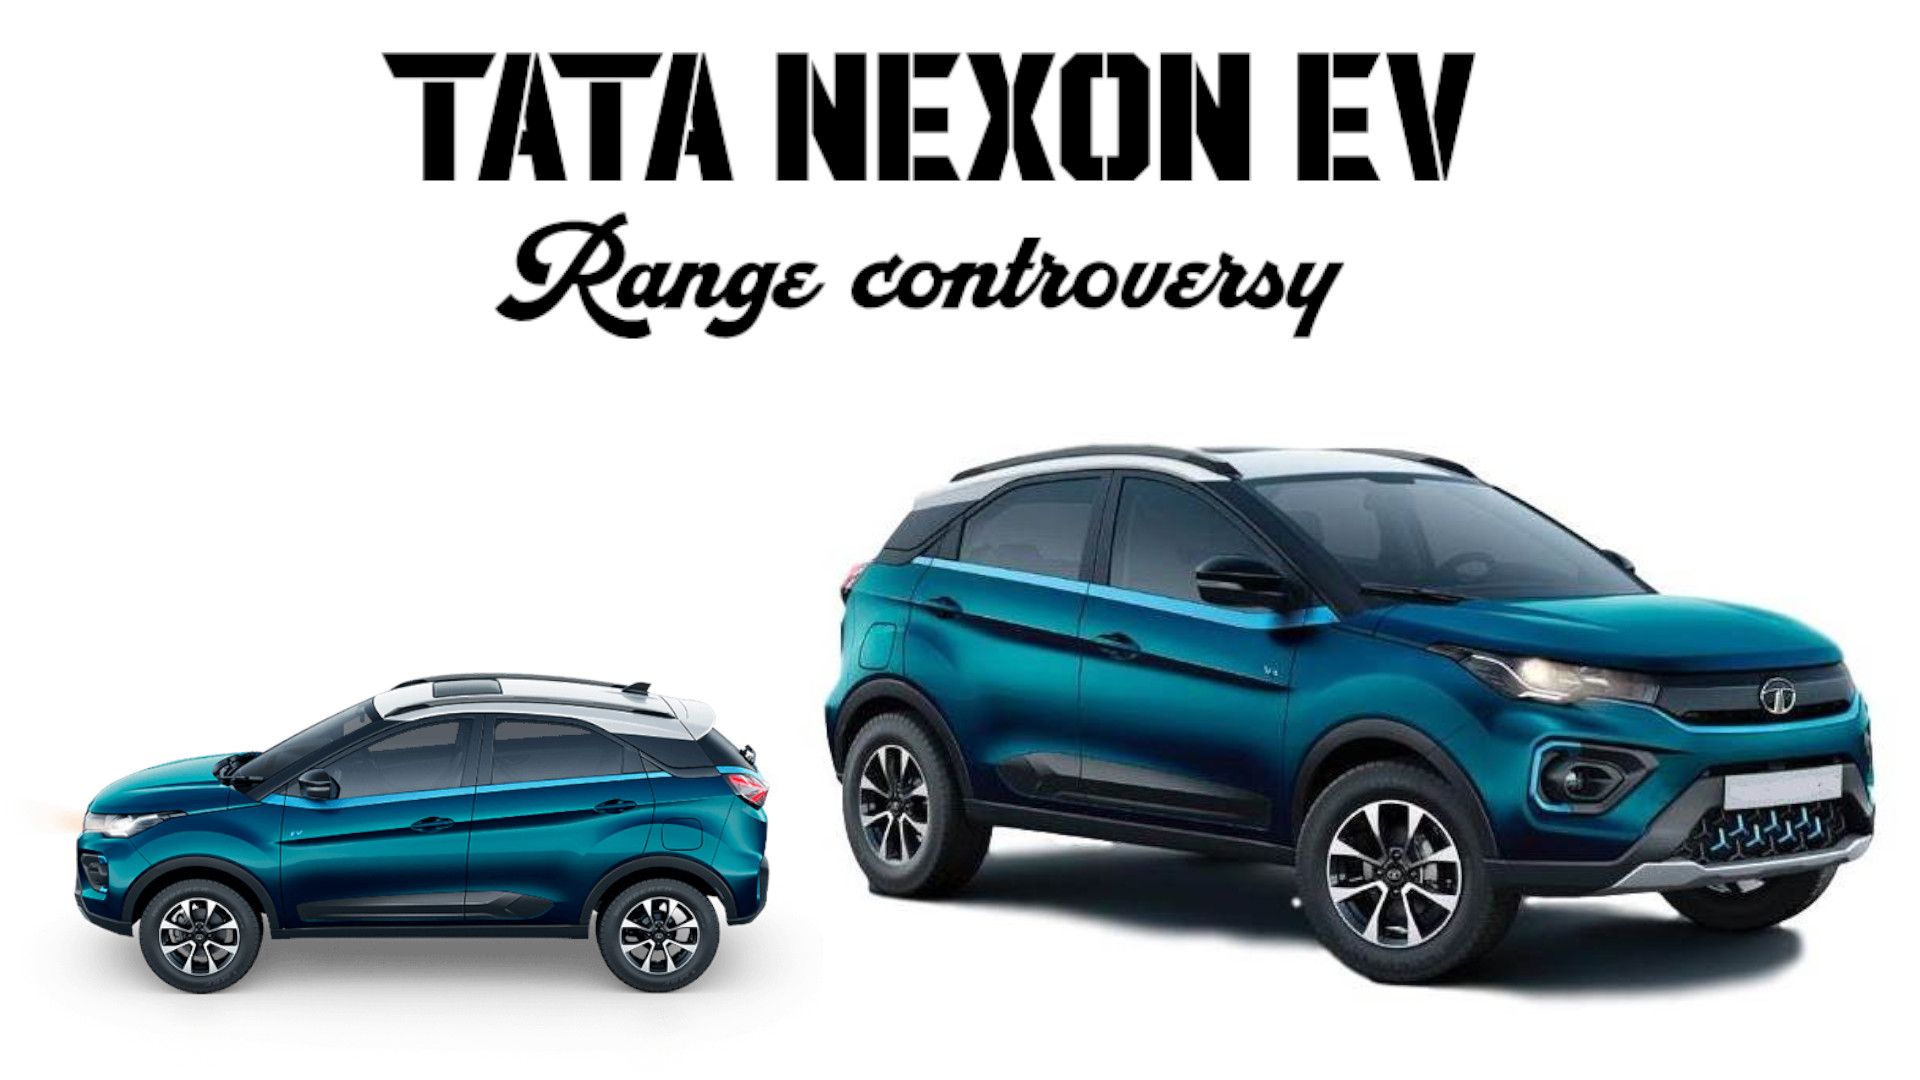 Tata Nexon Ev range controversy